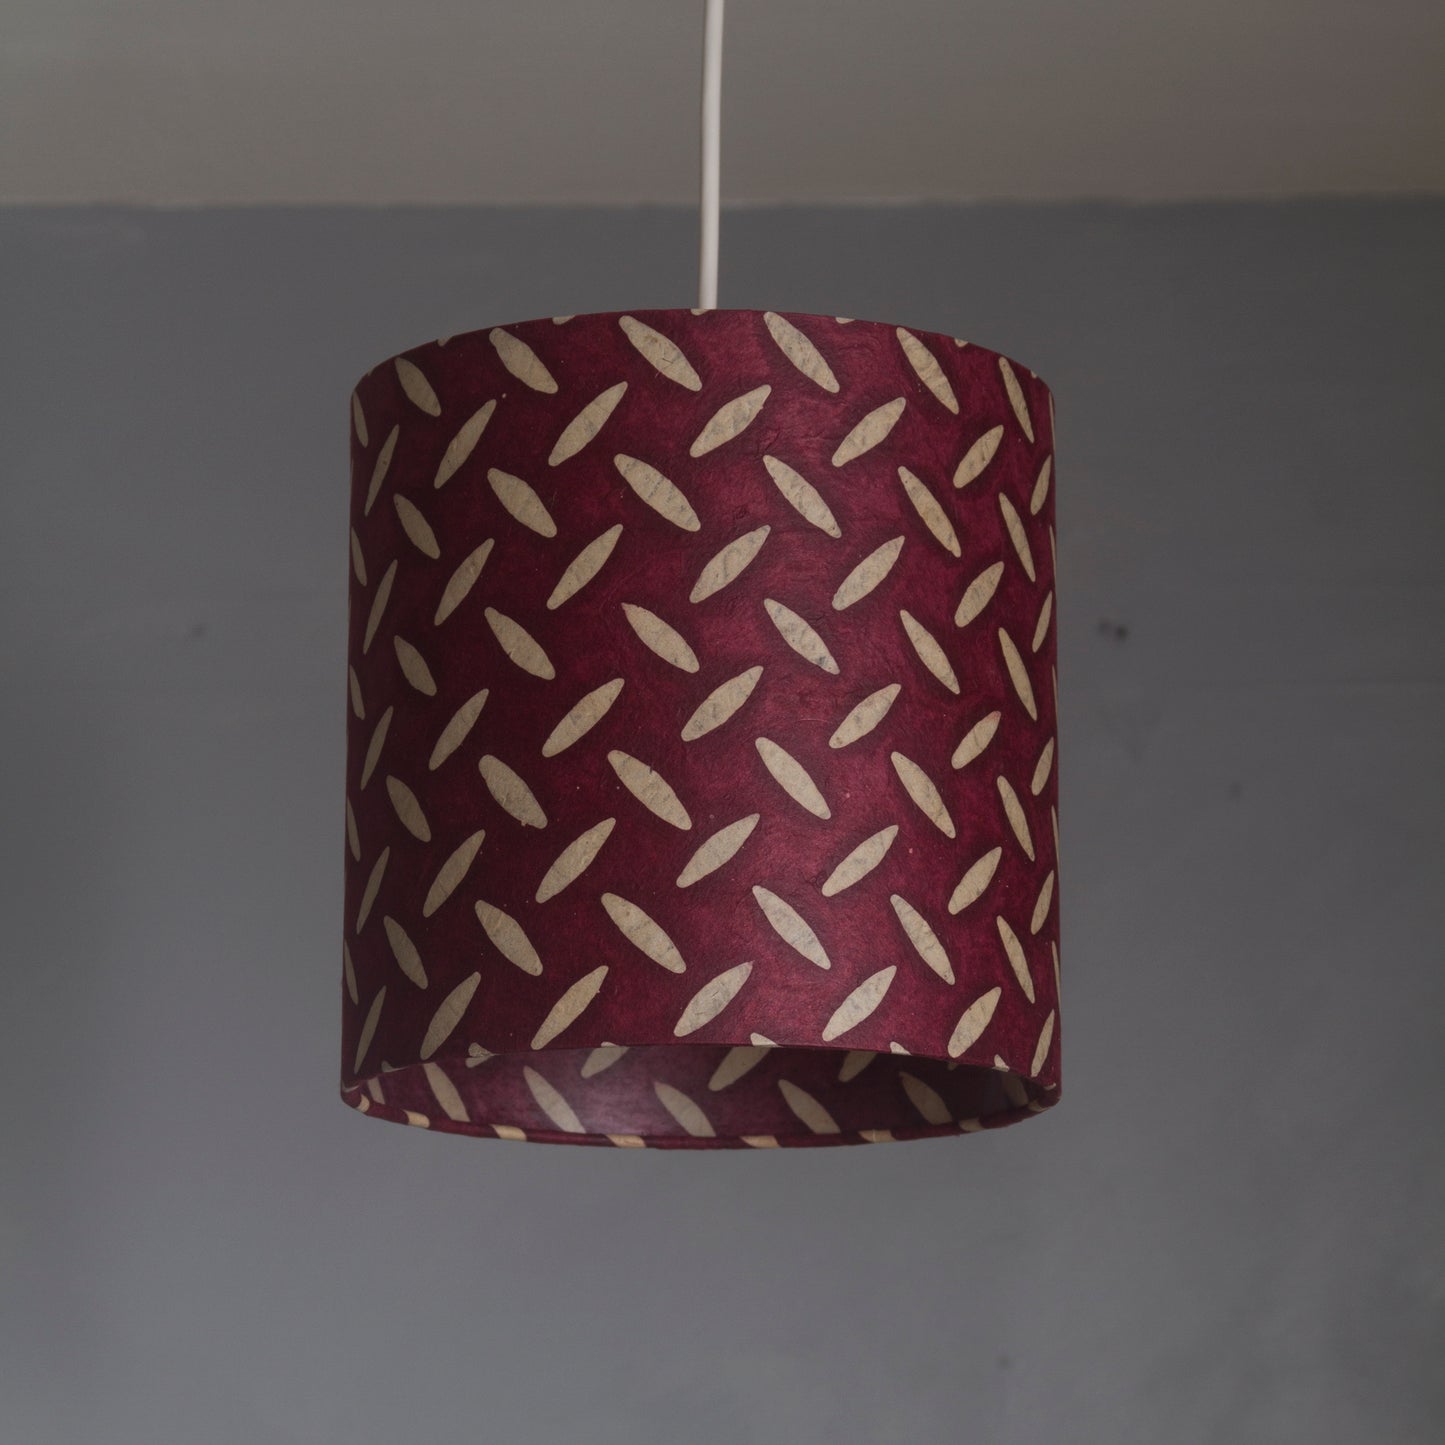 Drum Lamp Shade - P14 - Batik Tread Plate Cranberry, 60cm(d) x 20cm(h)